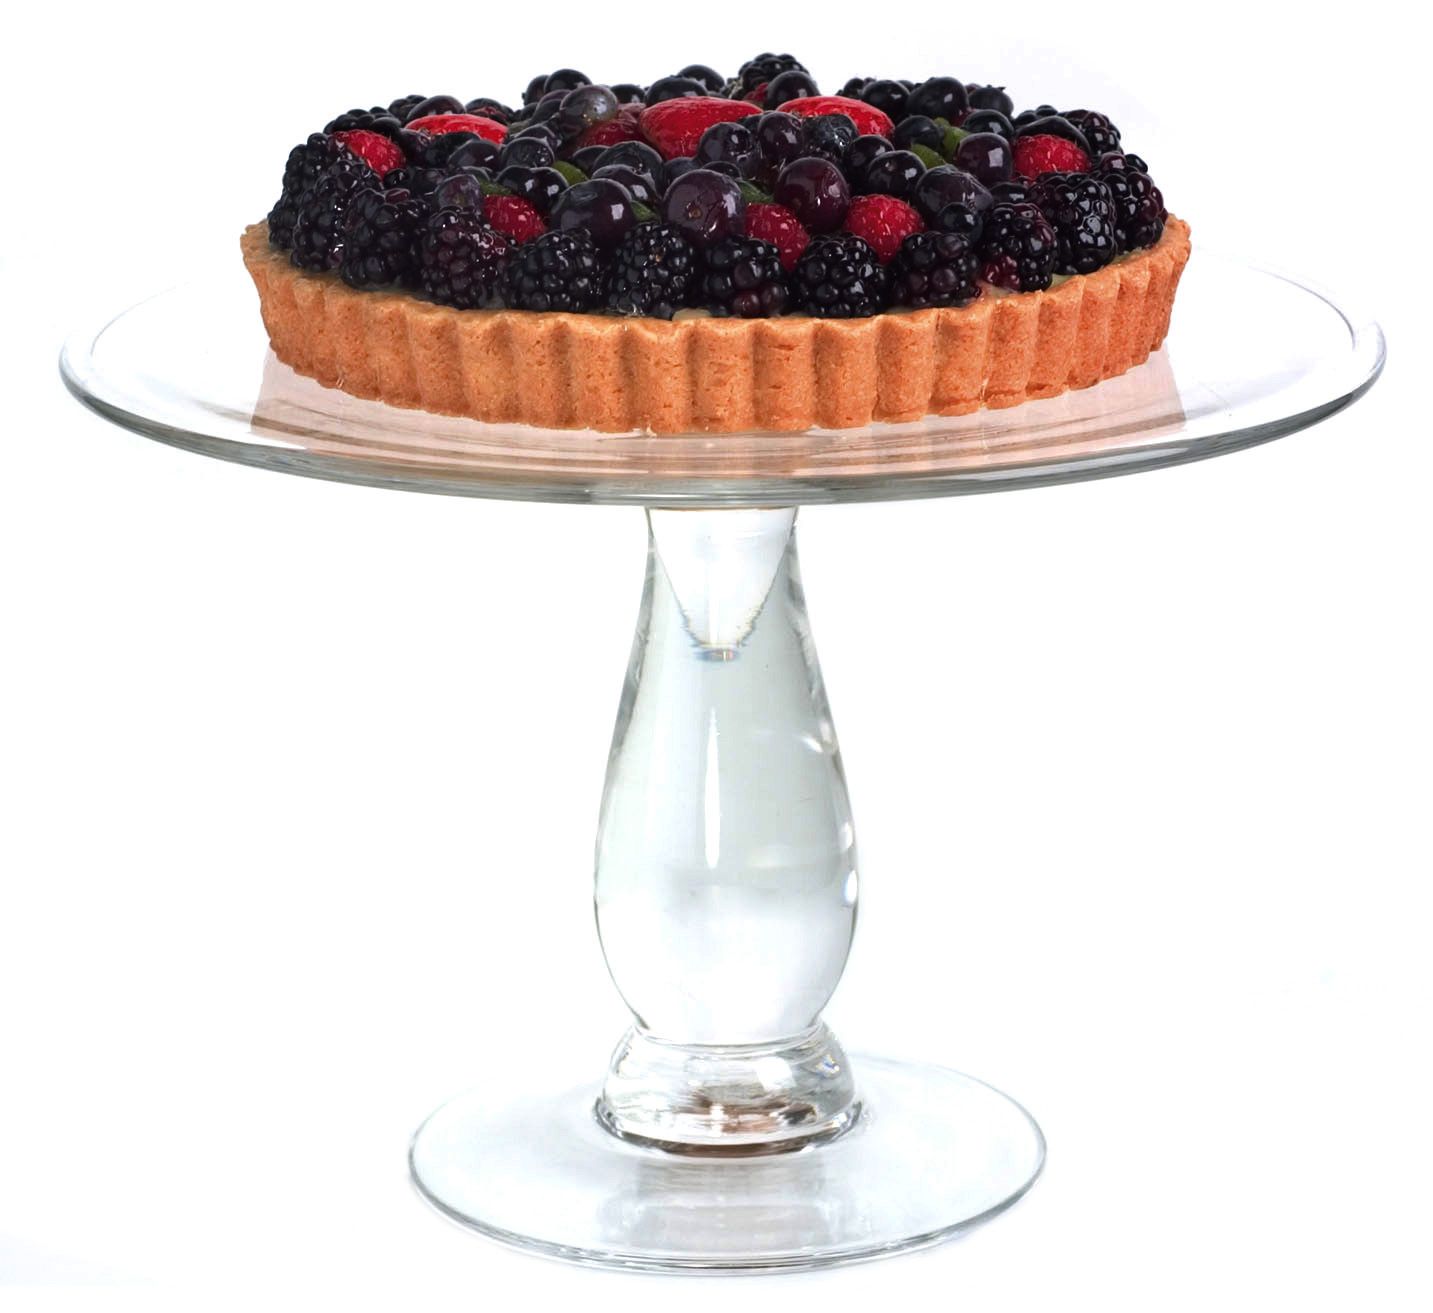 Artland&reg; Simplicity Cake Stand, 11" DIA., 7.5" H